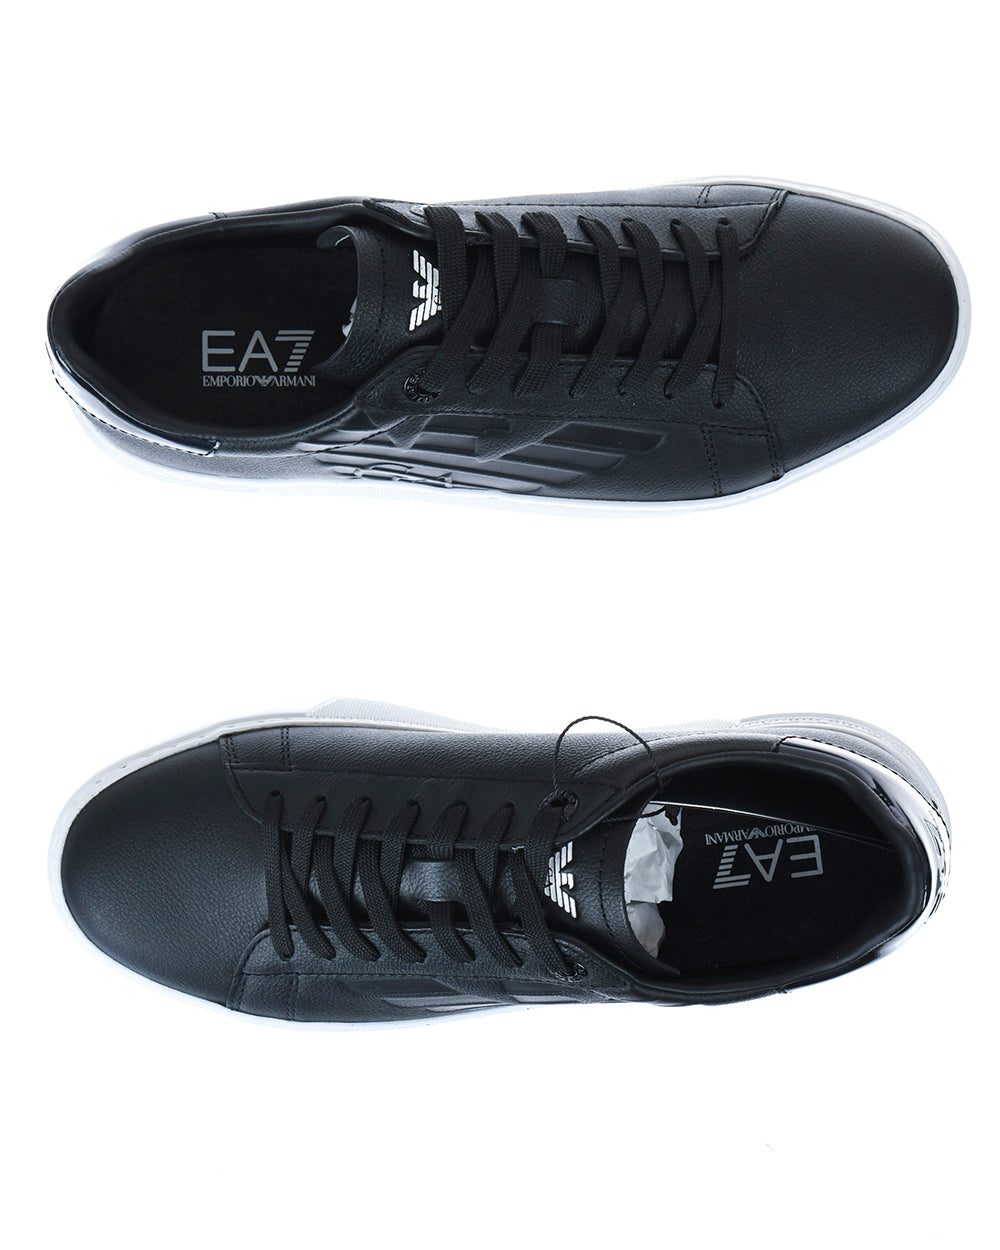 Sneakers Emporio Armani EA7 in Pelle Bianche e Verdi - mem39